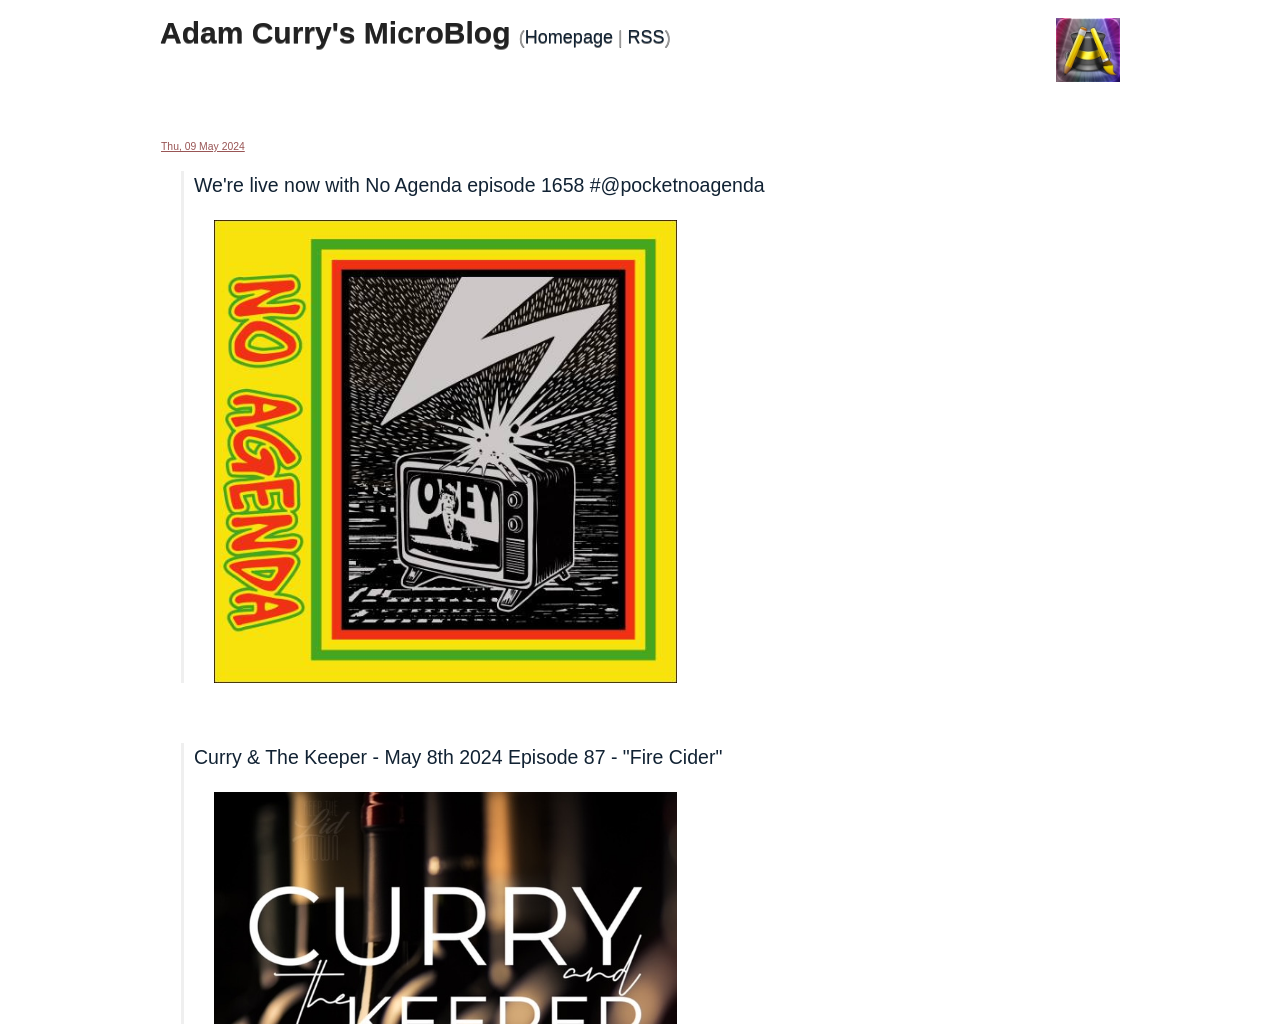 curry.com